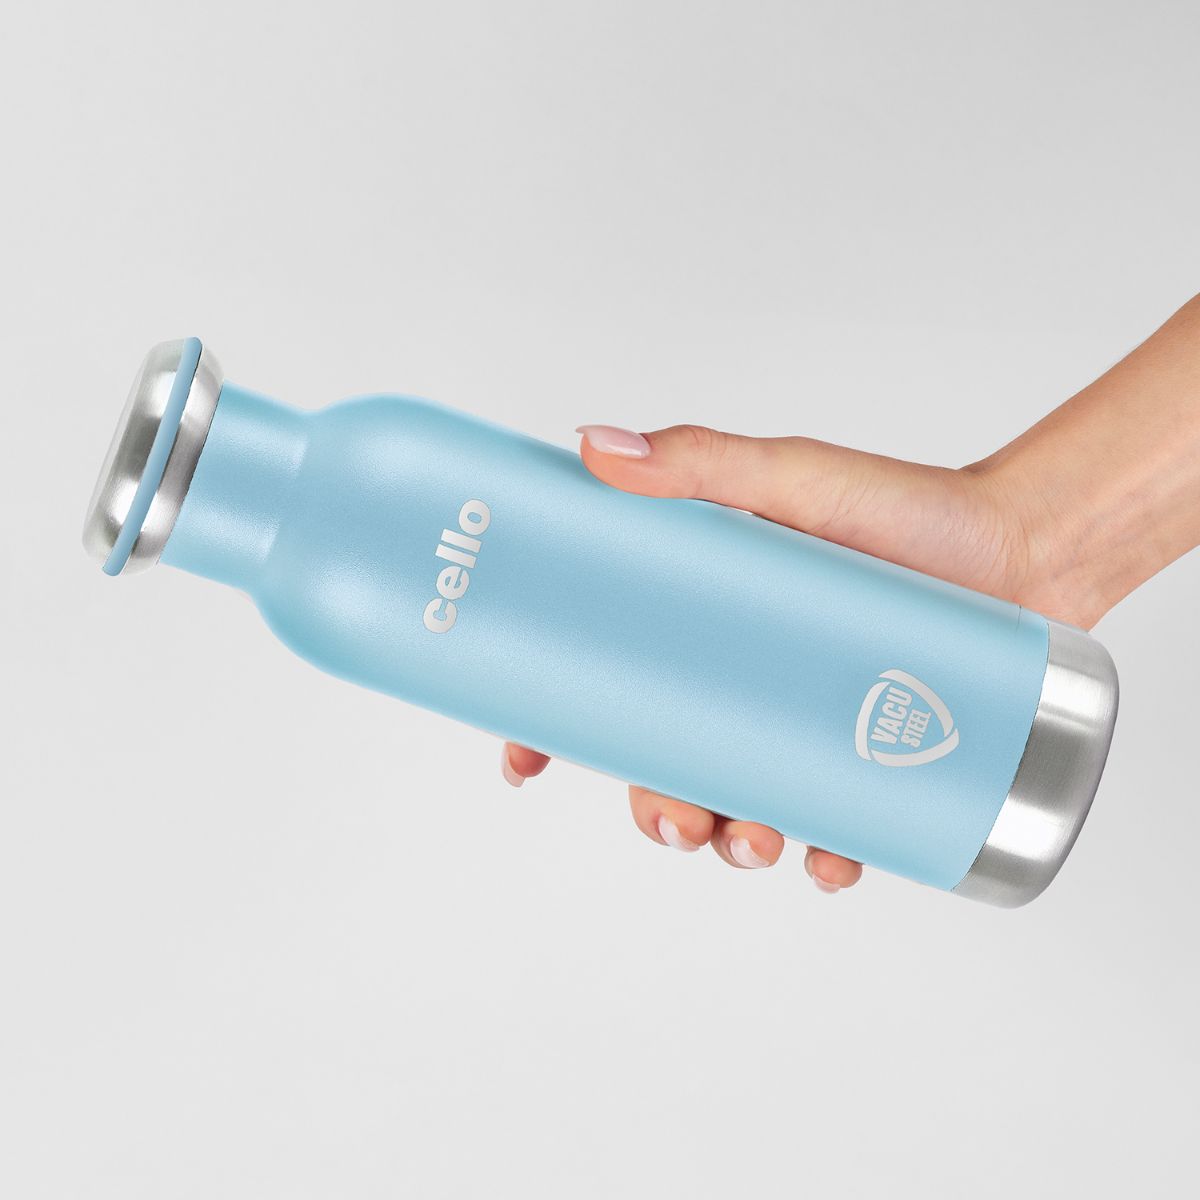 Duro Sip Flask, Vacusteel Water Bottle / 900ml